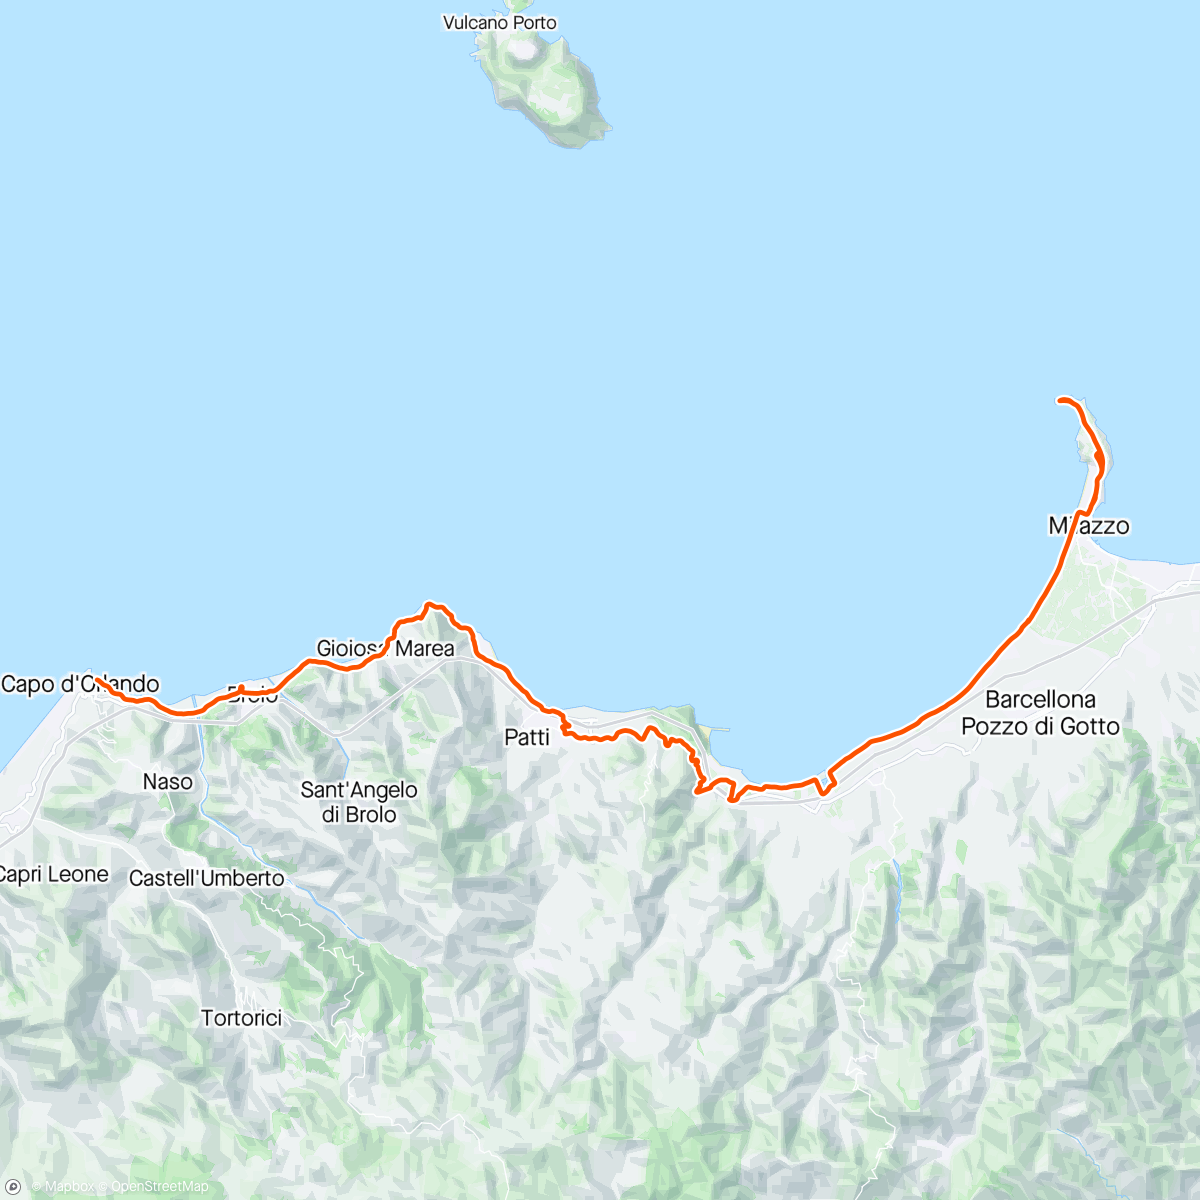 Mappa dell'attività Periplo della Sicilia con Anna. 15° tappa Milazzo - Capo d'Orlando